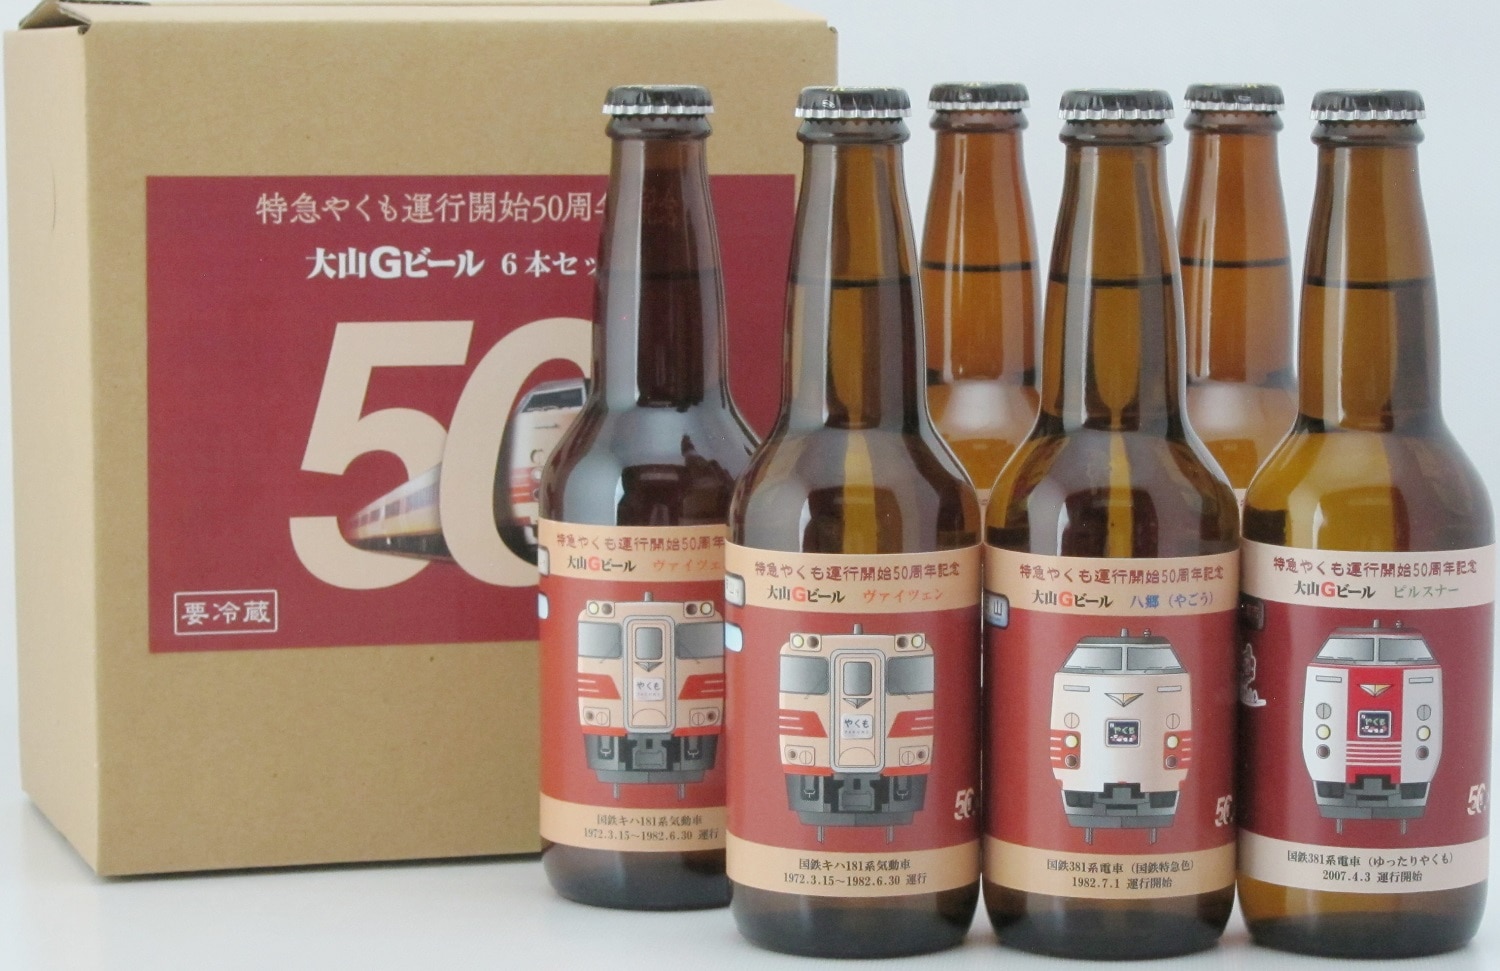 クラフトビール 大山Gビール 6本セット(各330ml) 特急やくもオリジナル